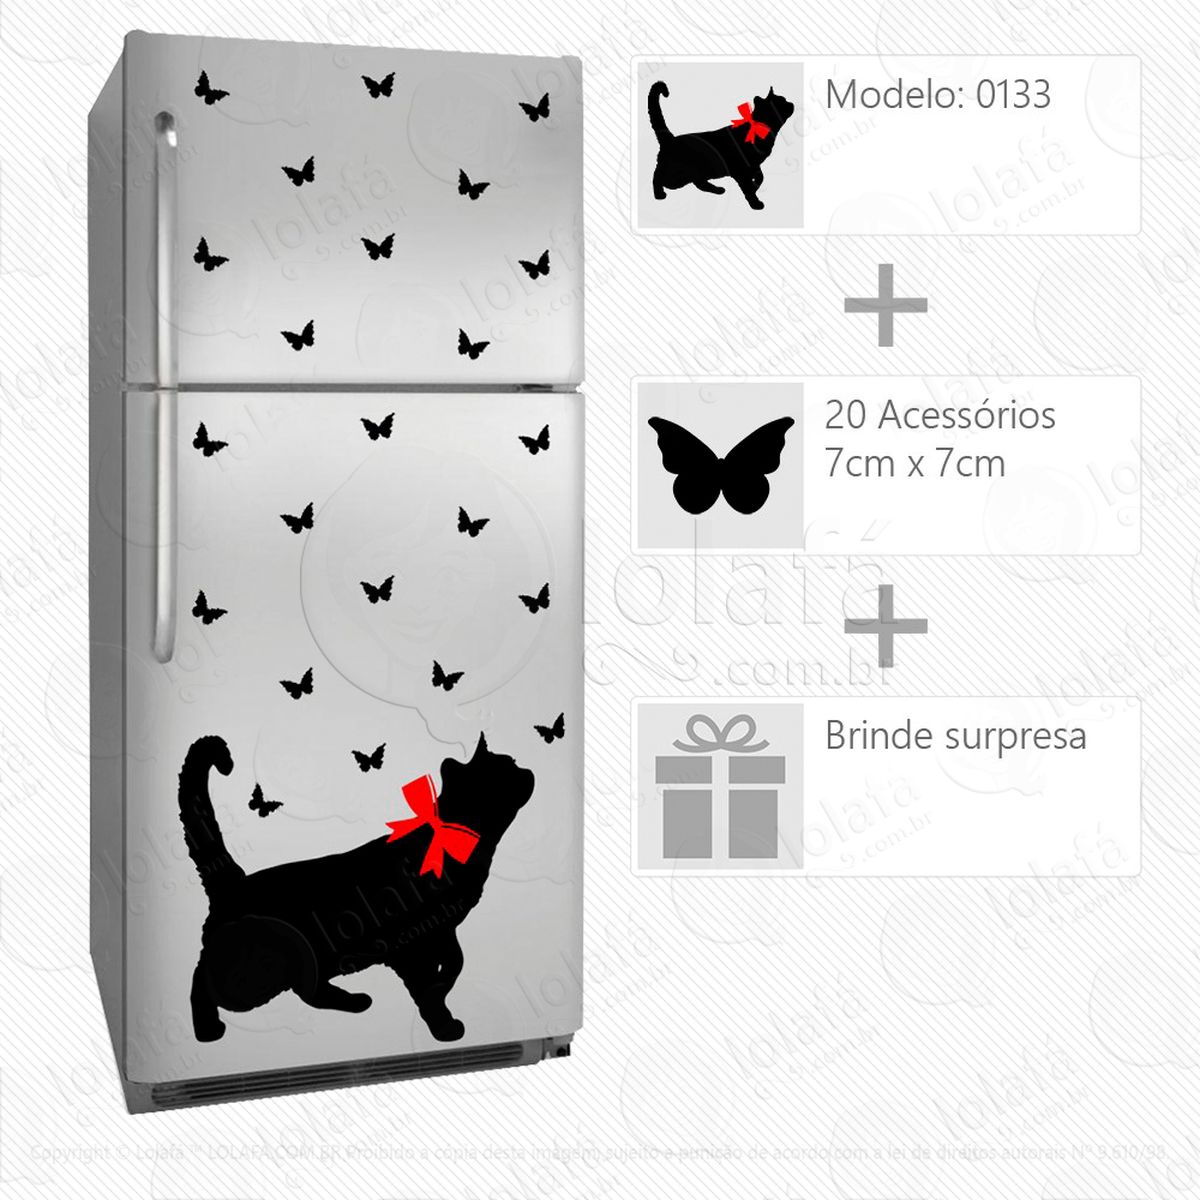 gato adesivo para geladeira e frigobar - mod:133